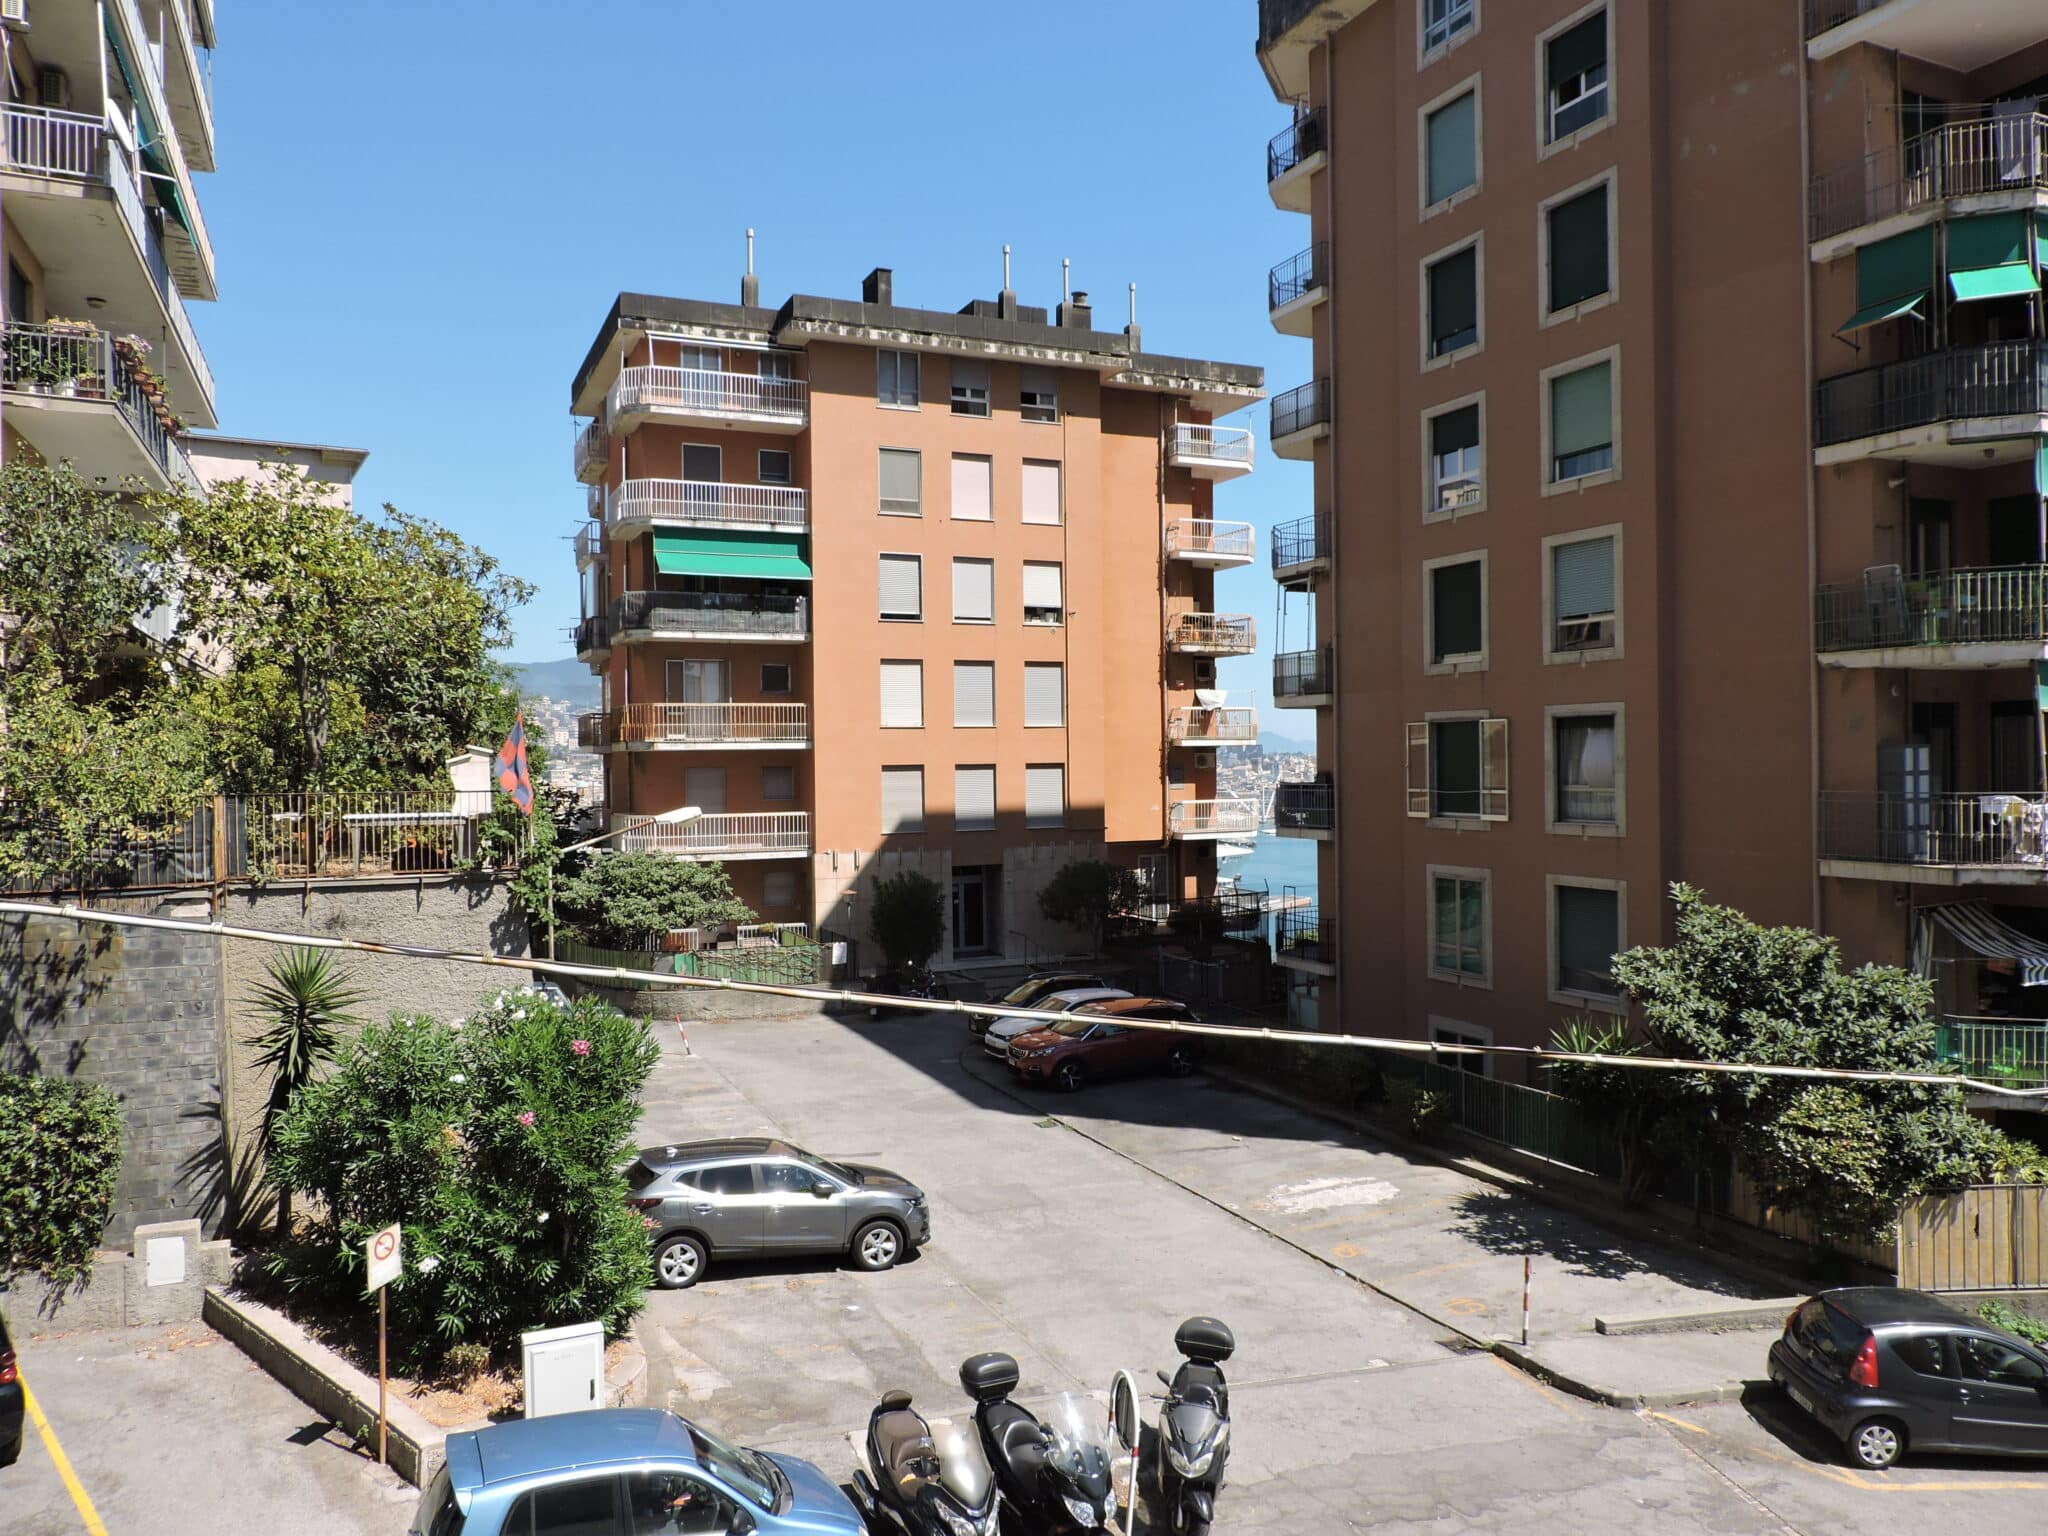 Sampierdarena, Via Rigola, 7,5 vani ordinati balconata